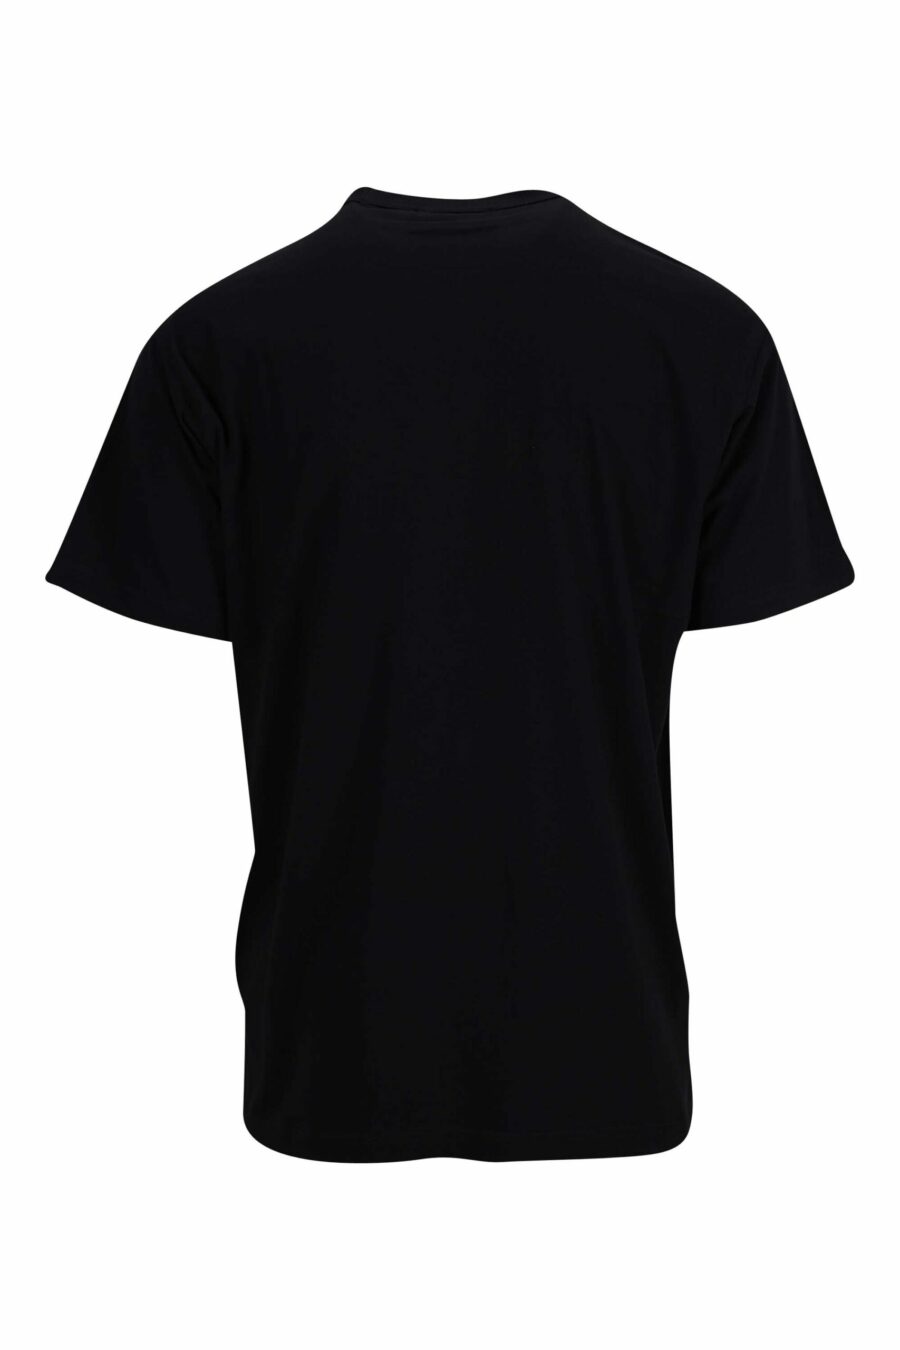 Schwarzes T-Shirt mit metallisch blauem, kreisförmigem Mini-Logo - 8052019402216 1 skaliert